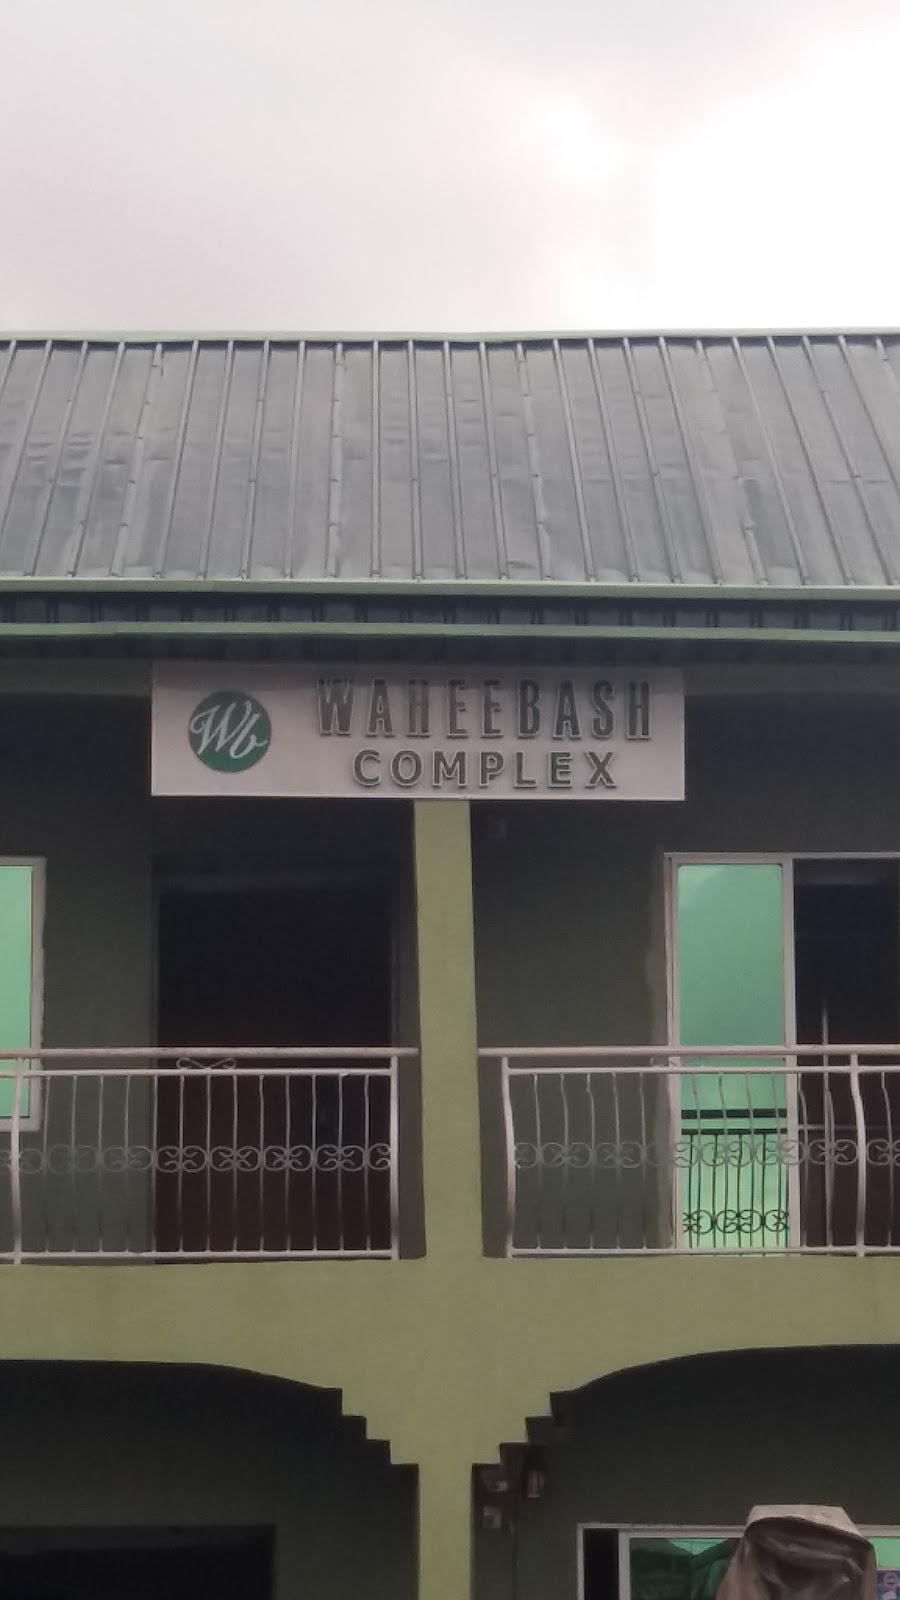 Waheebash Complex